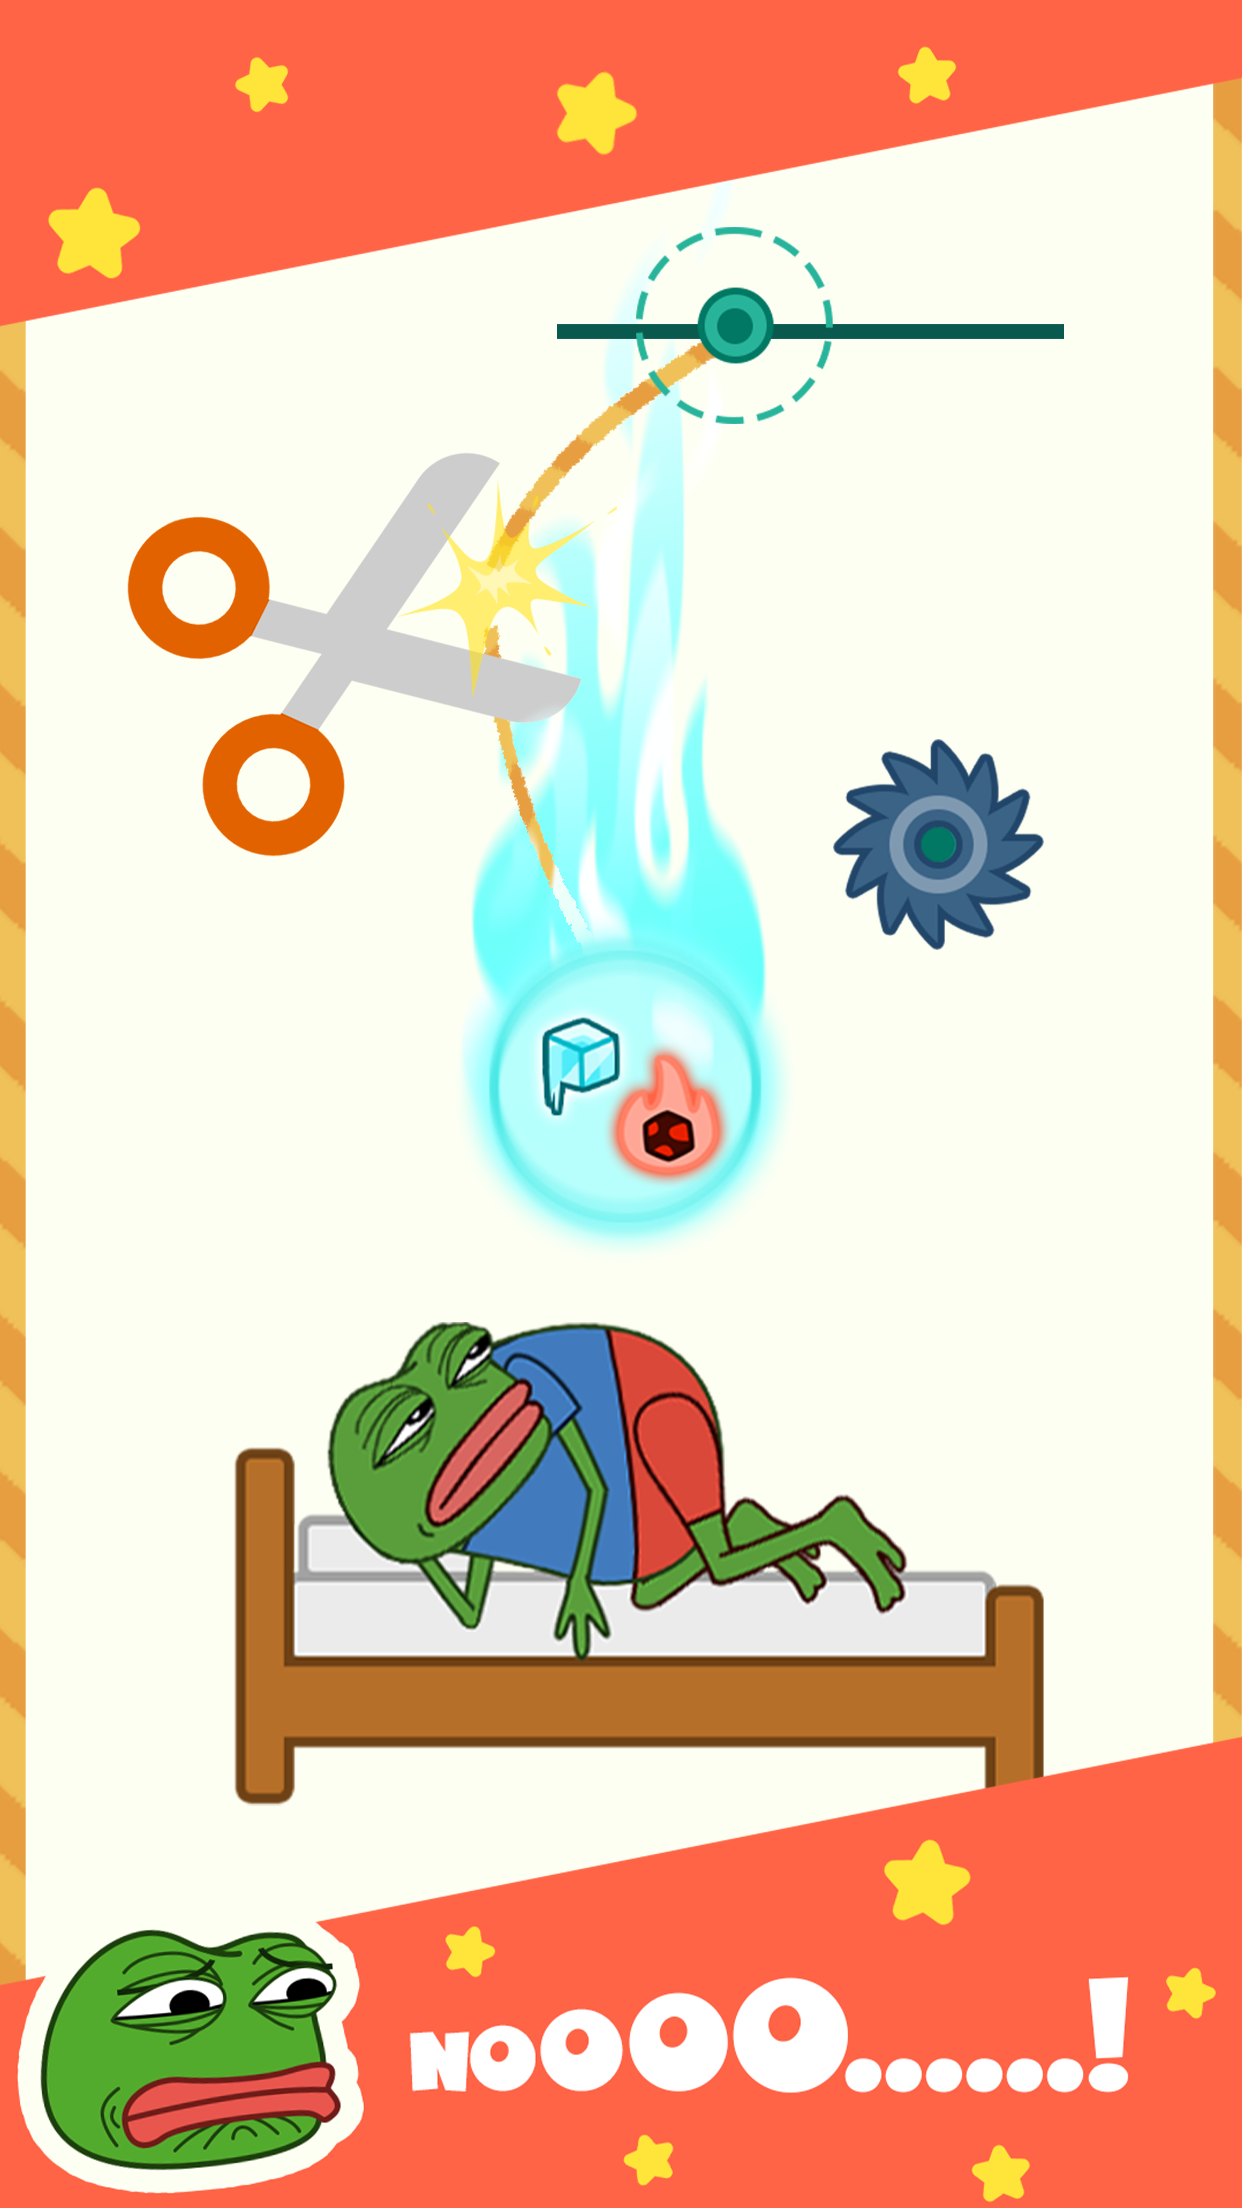 Troll The Frog screenshot game